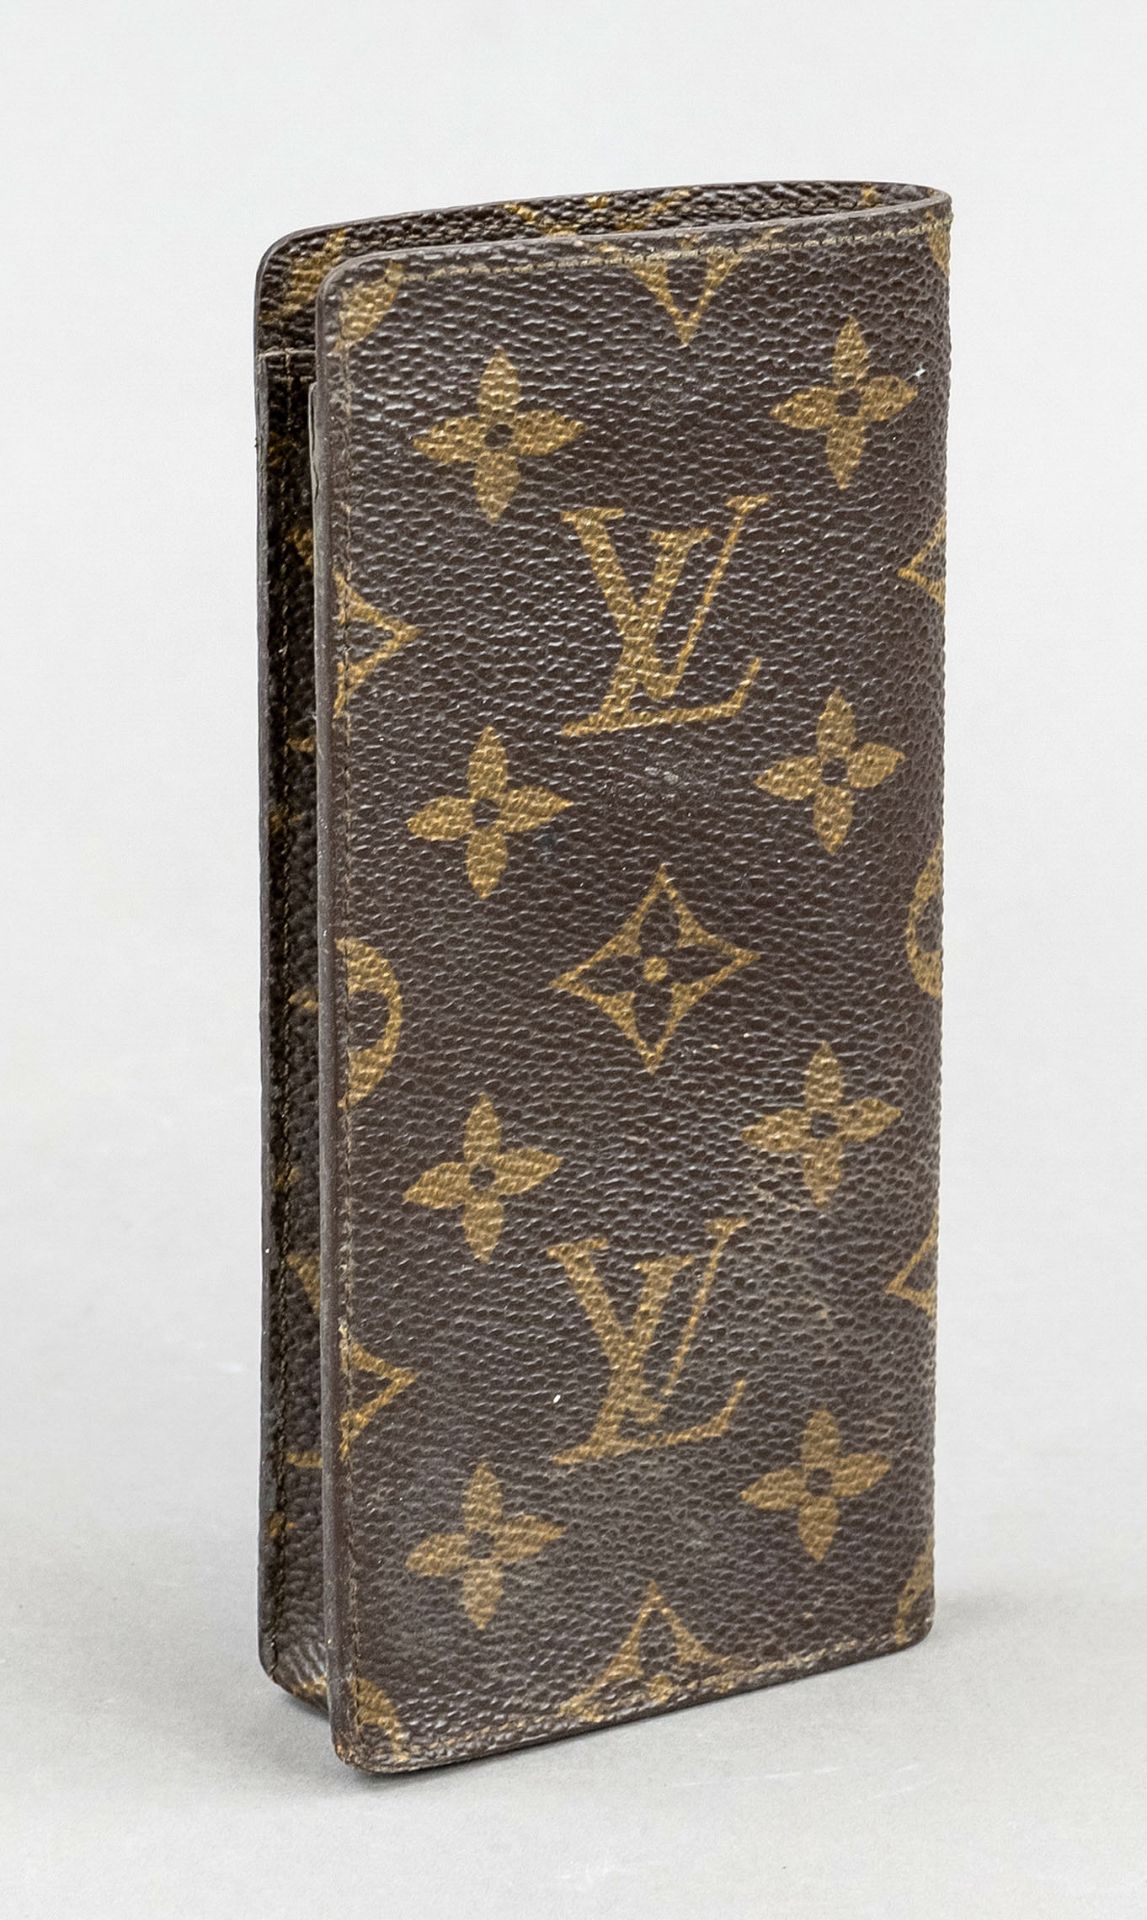 Louis Vuitton, Vintage Monogram Canvas Eyeglass Case, rubberized cotton canvas in classic logo print